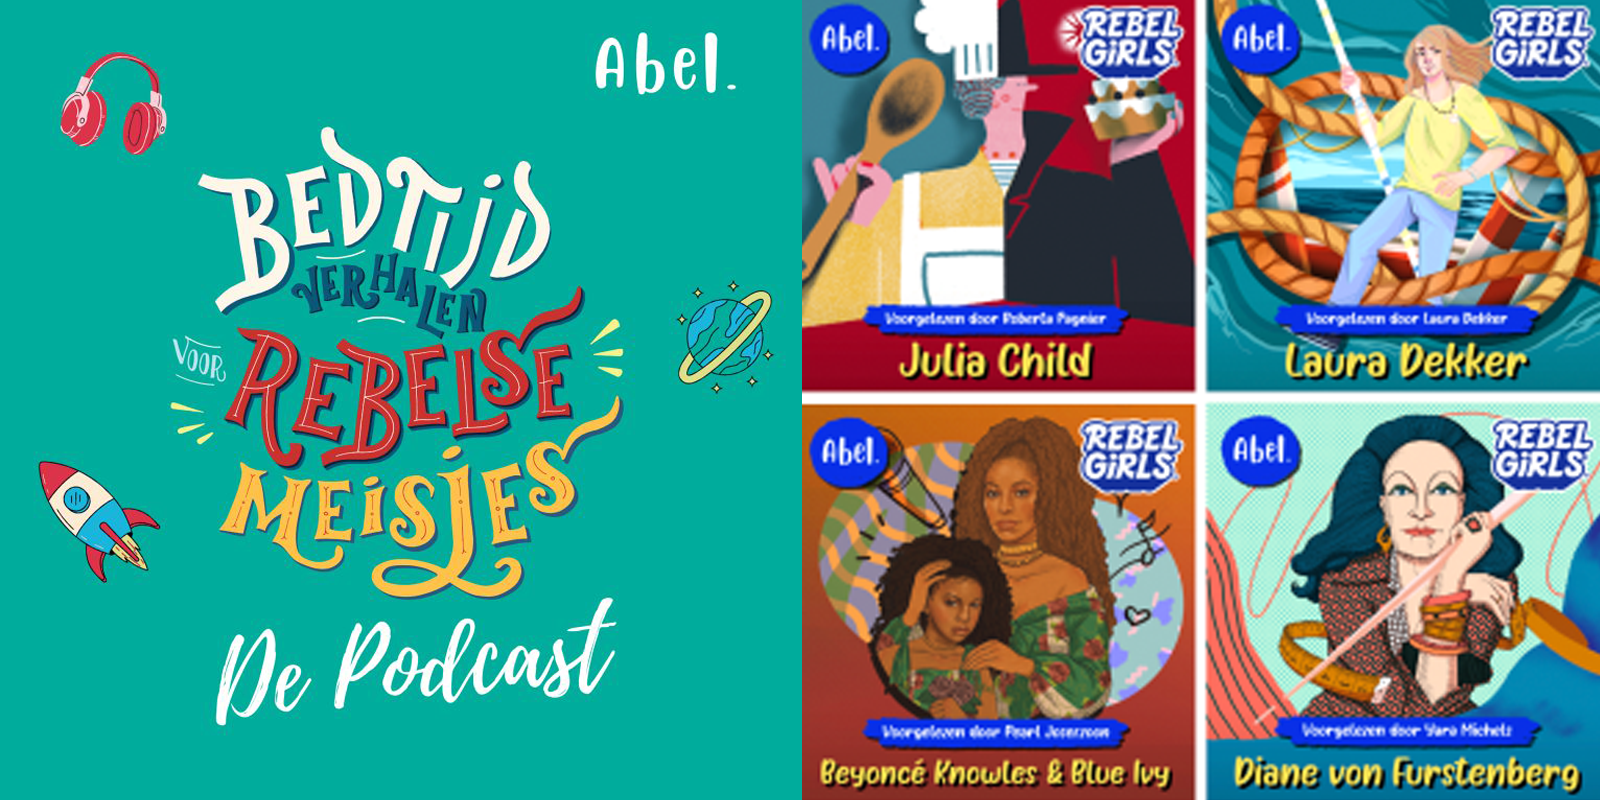 Laat je inspireren: de Nederlandse 'Bedtijdverhalen voor rebelse meisjes' podcast is hier!